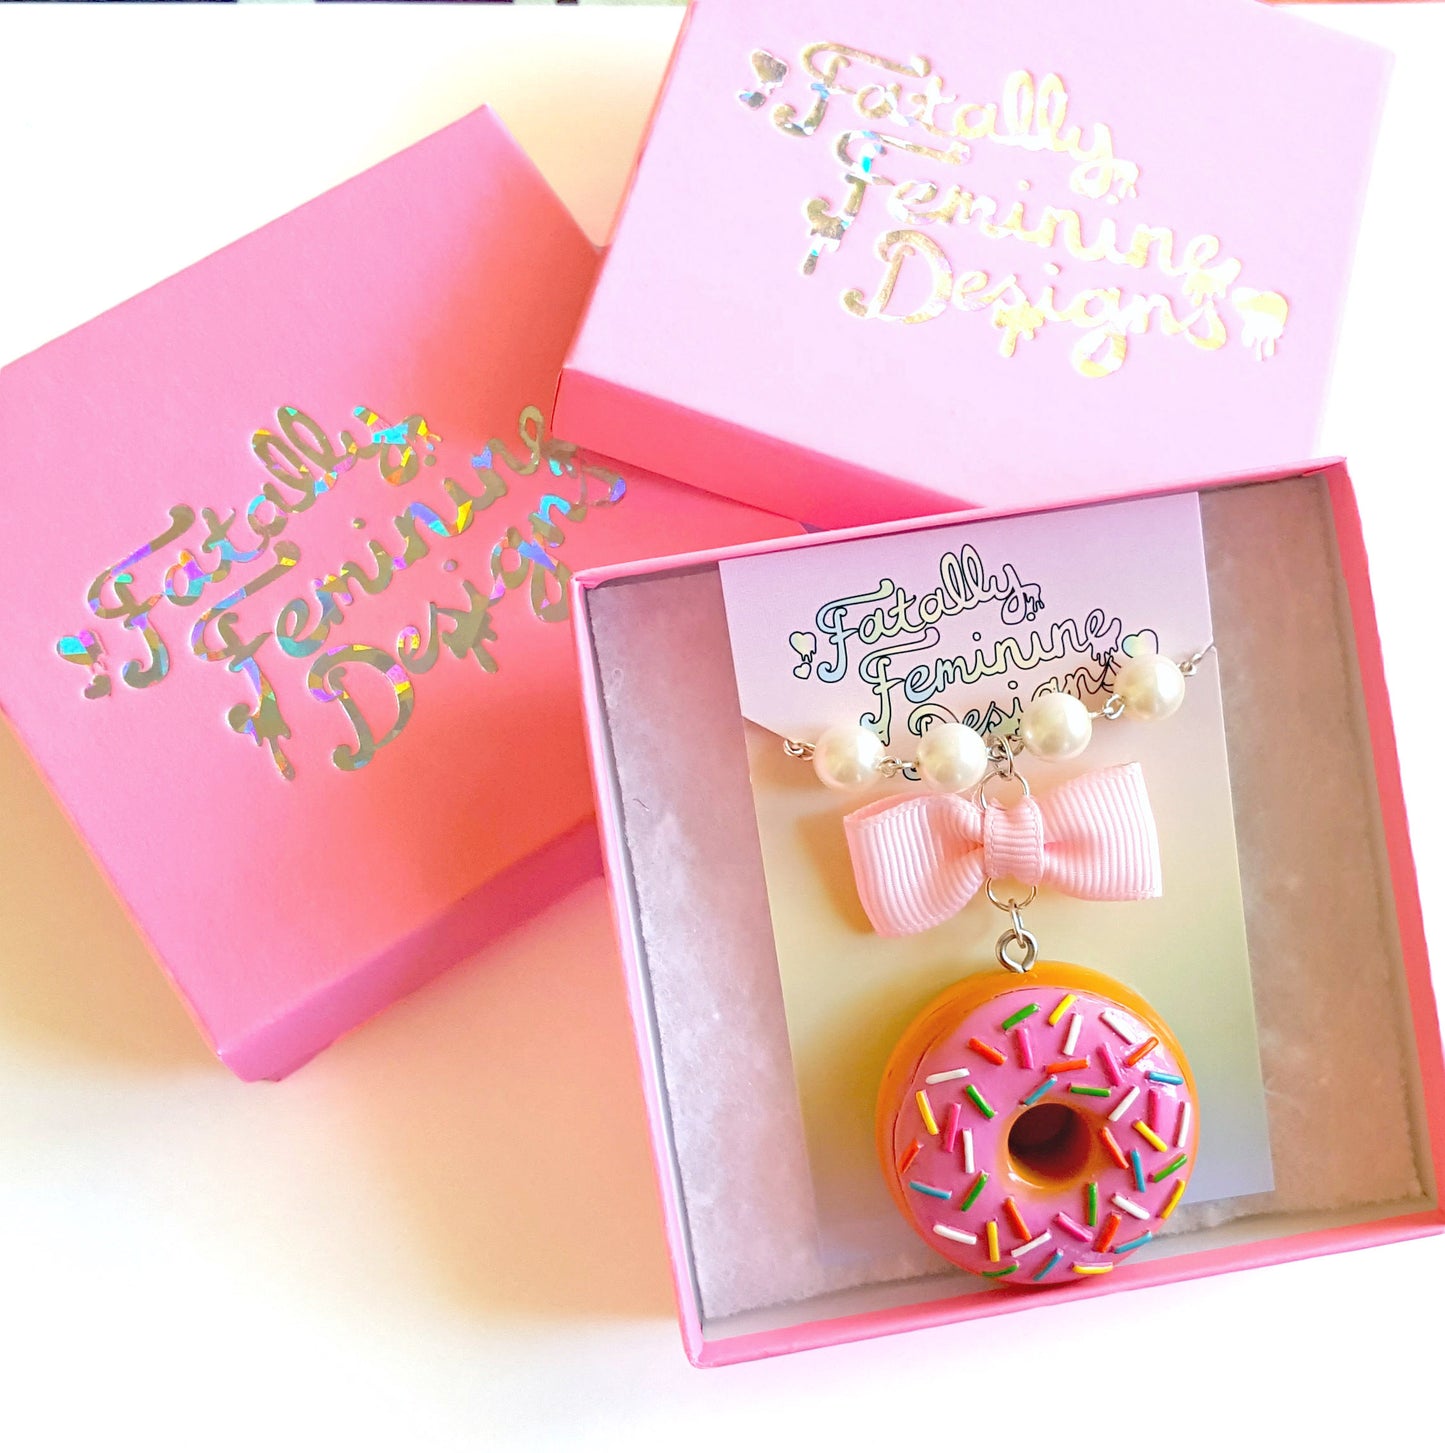 Pink Cupcake Earrings, Rainbow Sprinkle Birthday Cake Charm Earrings